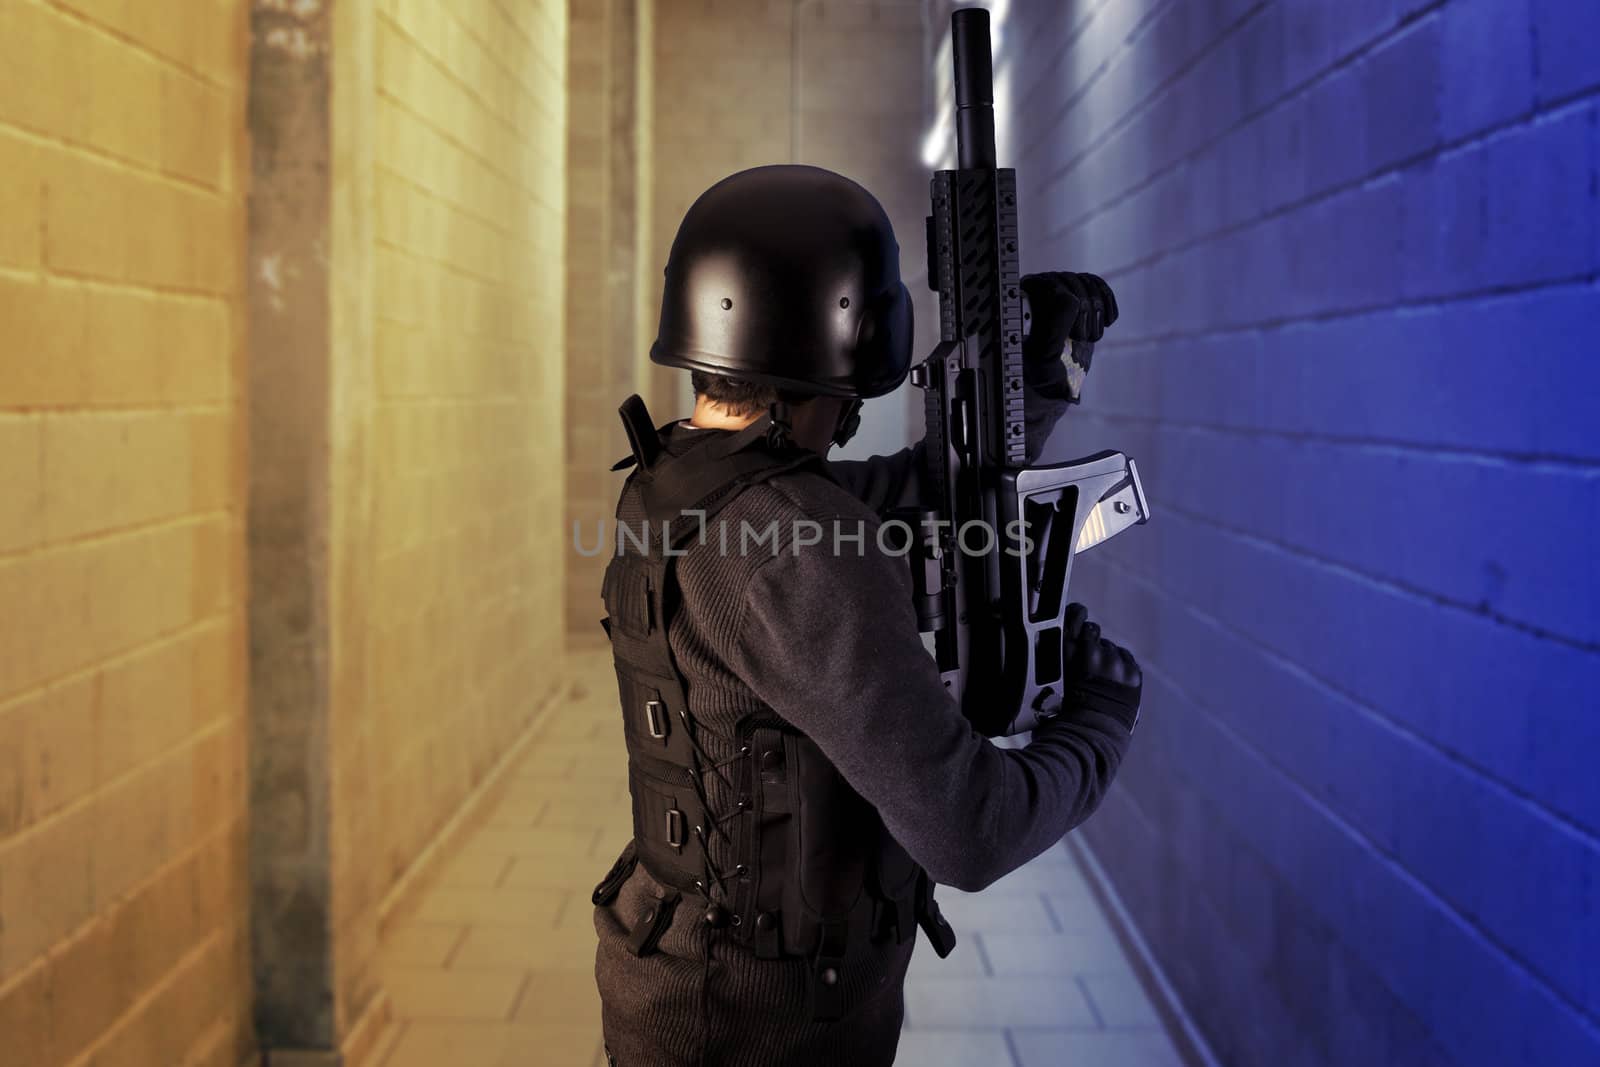 Airport security, armed police wearing bulletproof vests